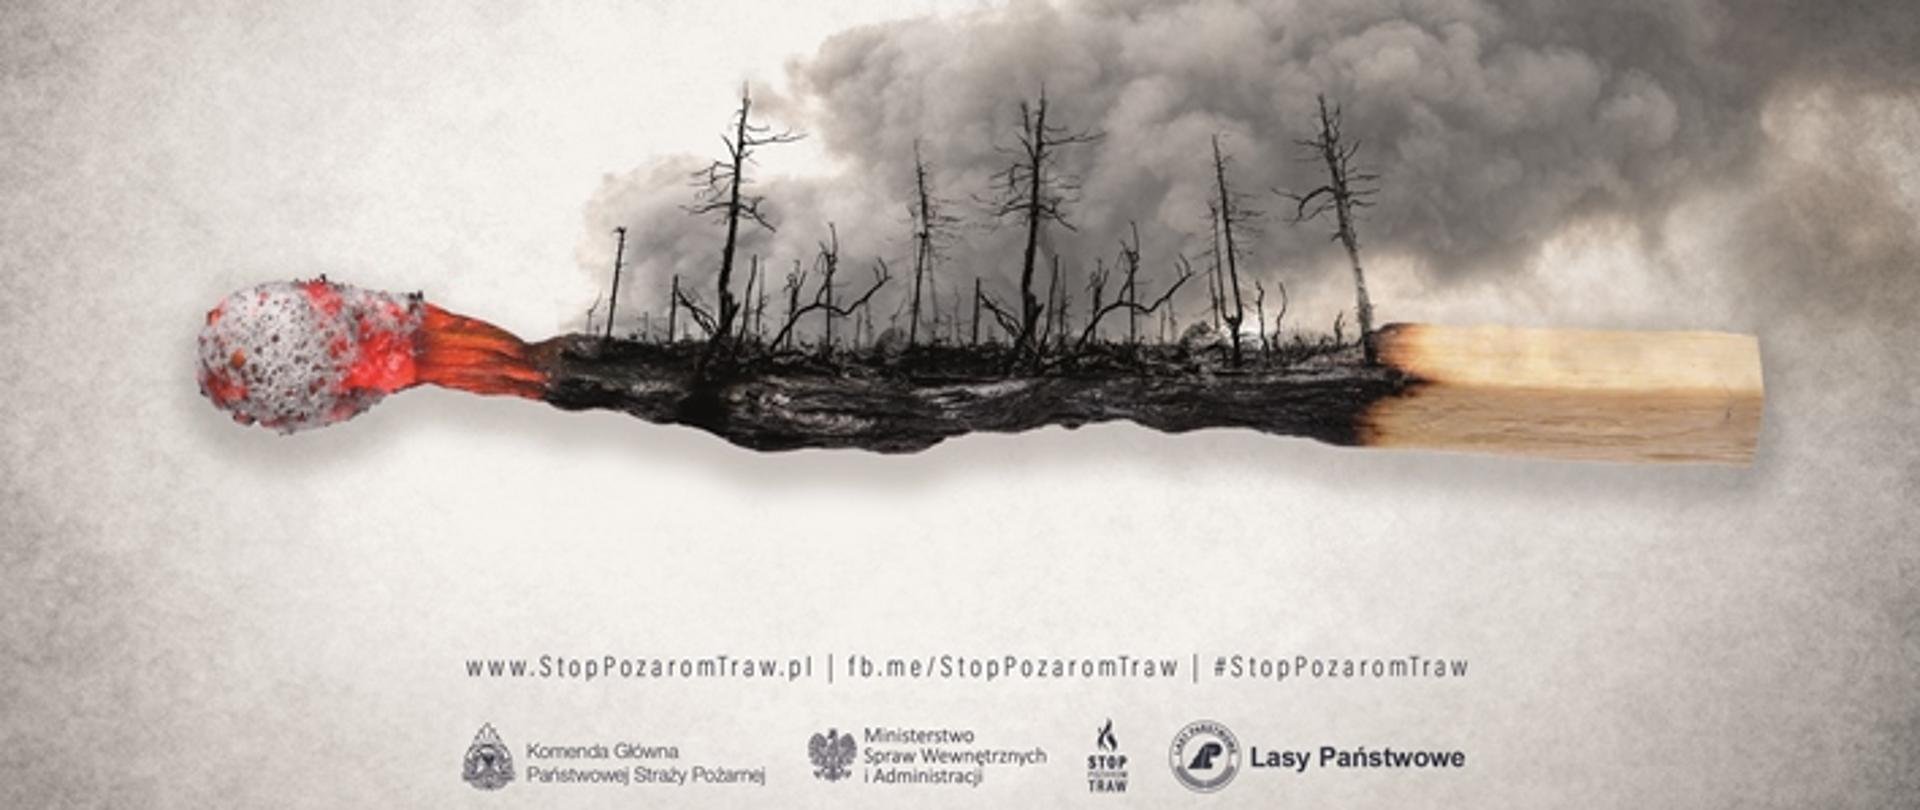 Plakat przedstawiający tlącą się zapałkę. Środkowa część zapałki przedstawia spalony las z unoszącym się dymem. Na górze plakatu napis "STOP POŻAROM TRAW". Pod nim napis "JEDNA ZAPAŁKA MOŻE ZMIENIĆ WSZYSTKO"